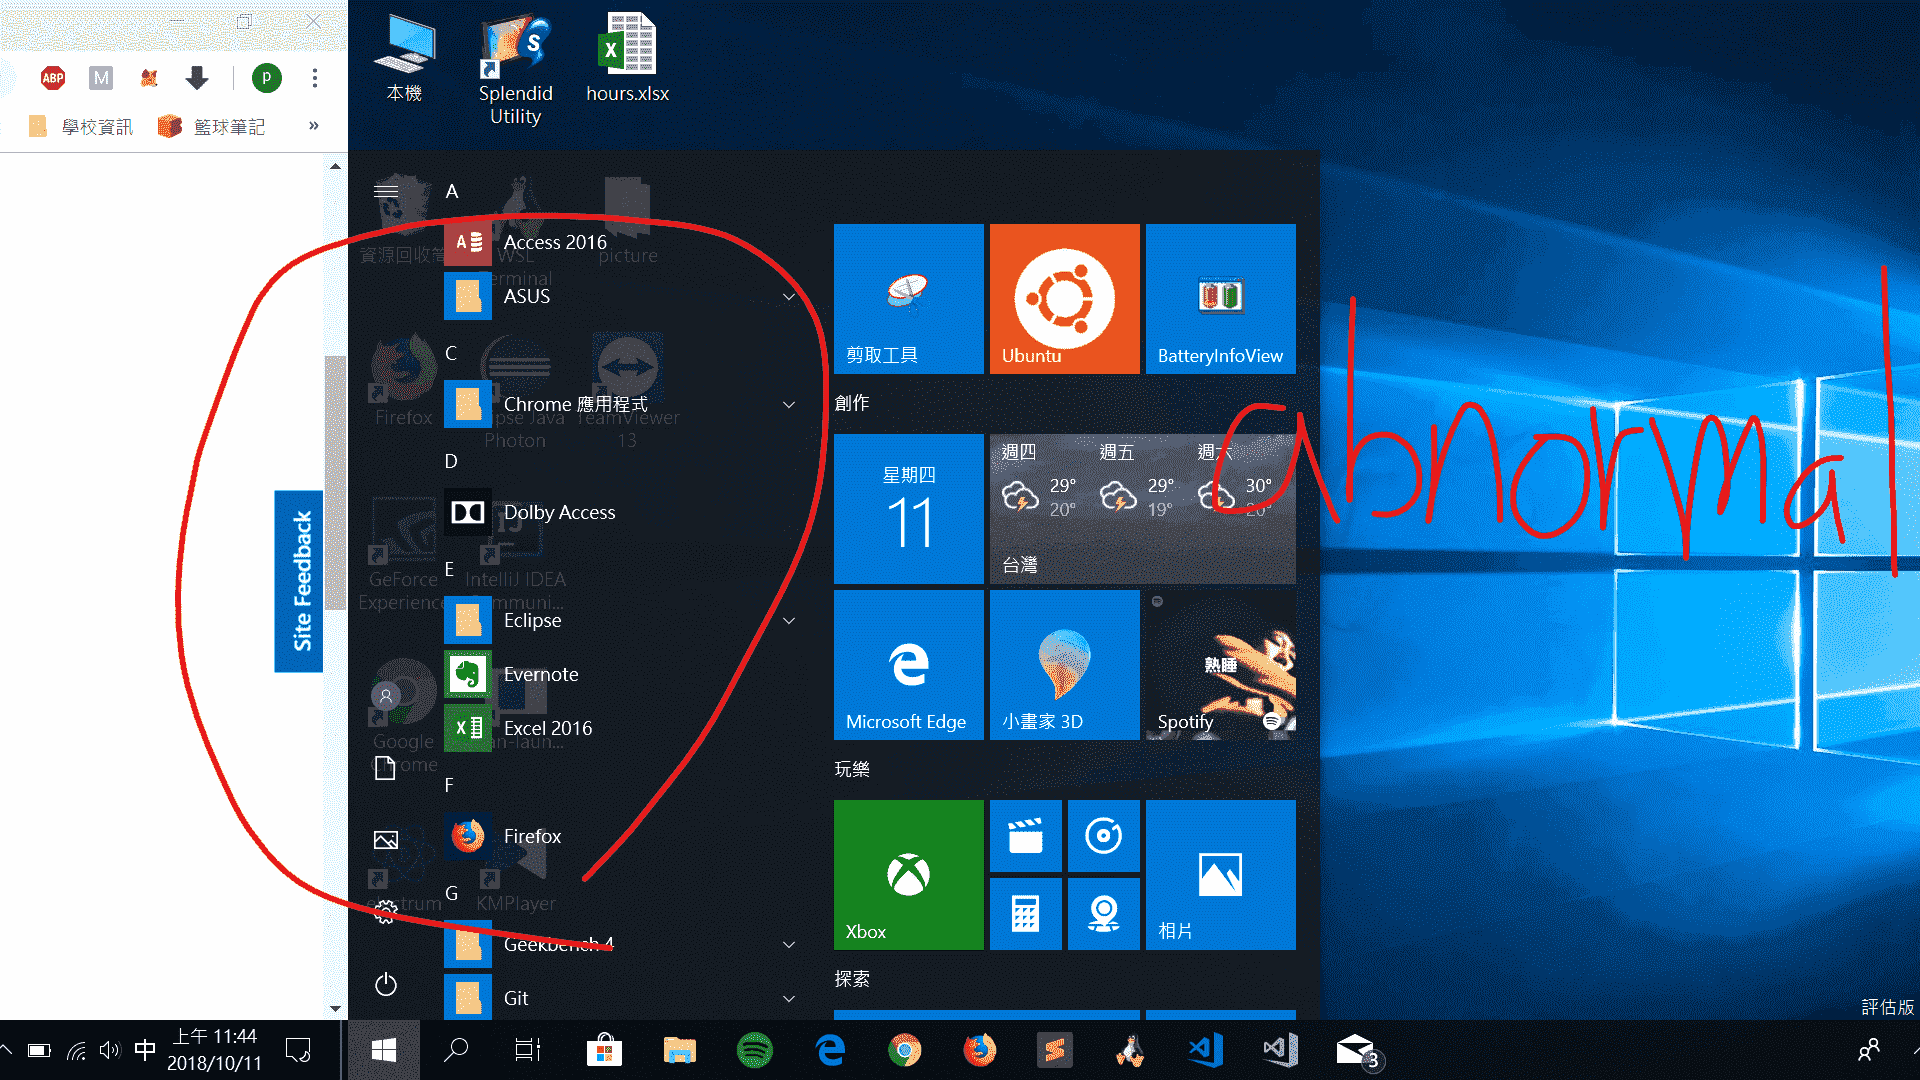 Windows 10 rendering BUG!!!! c73d7394-0b41-47e3-bc2a-de7aa091b939?upload=true.png